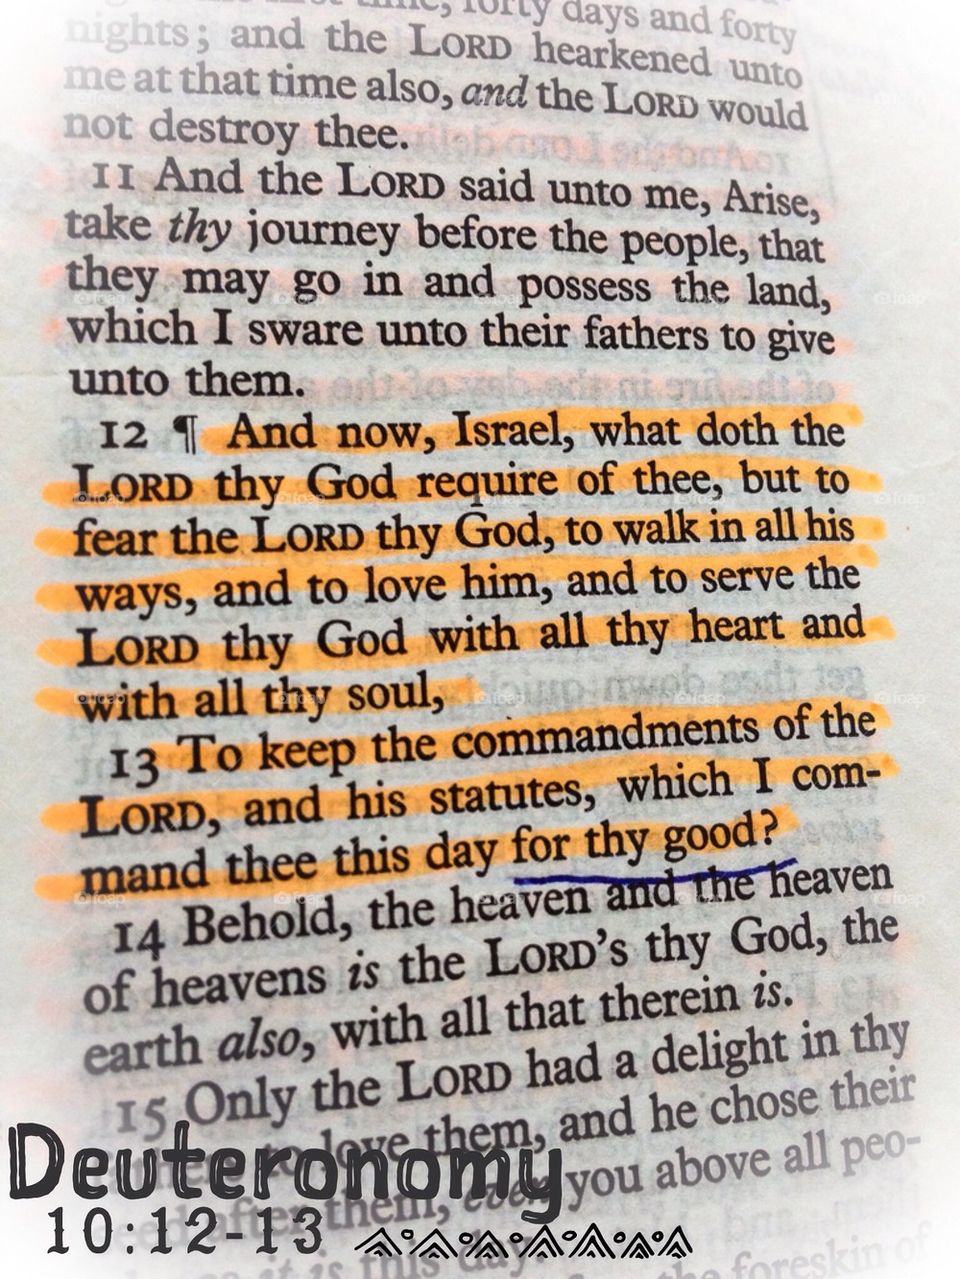 Deuteronomy 10:12-13